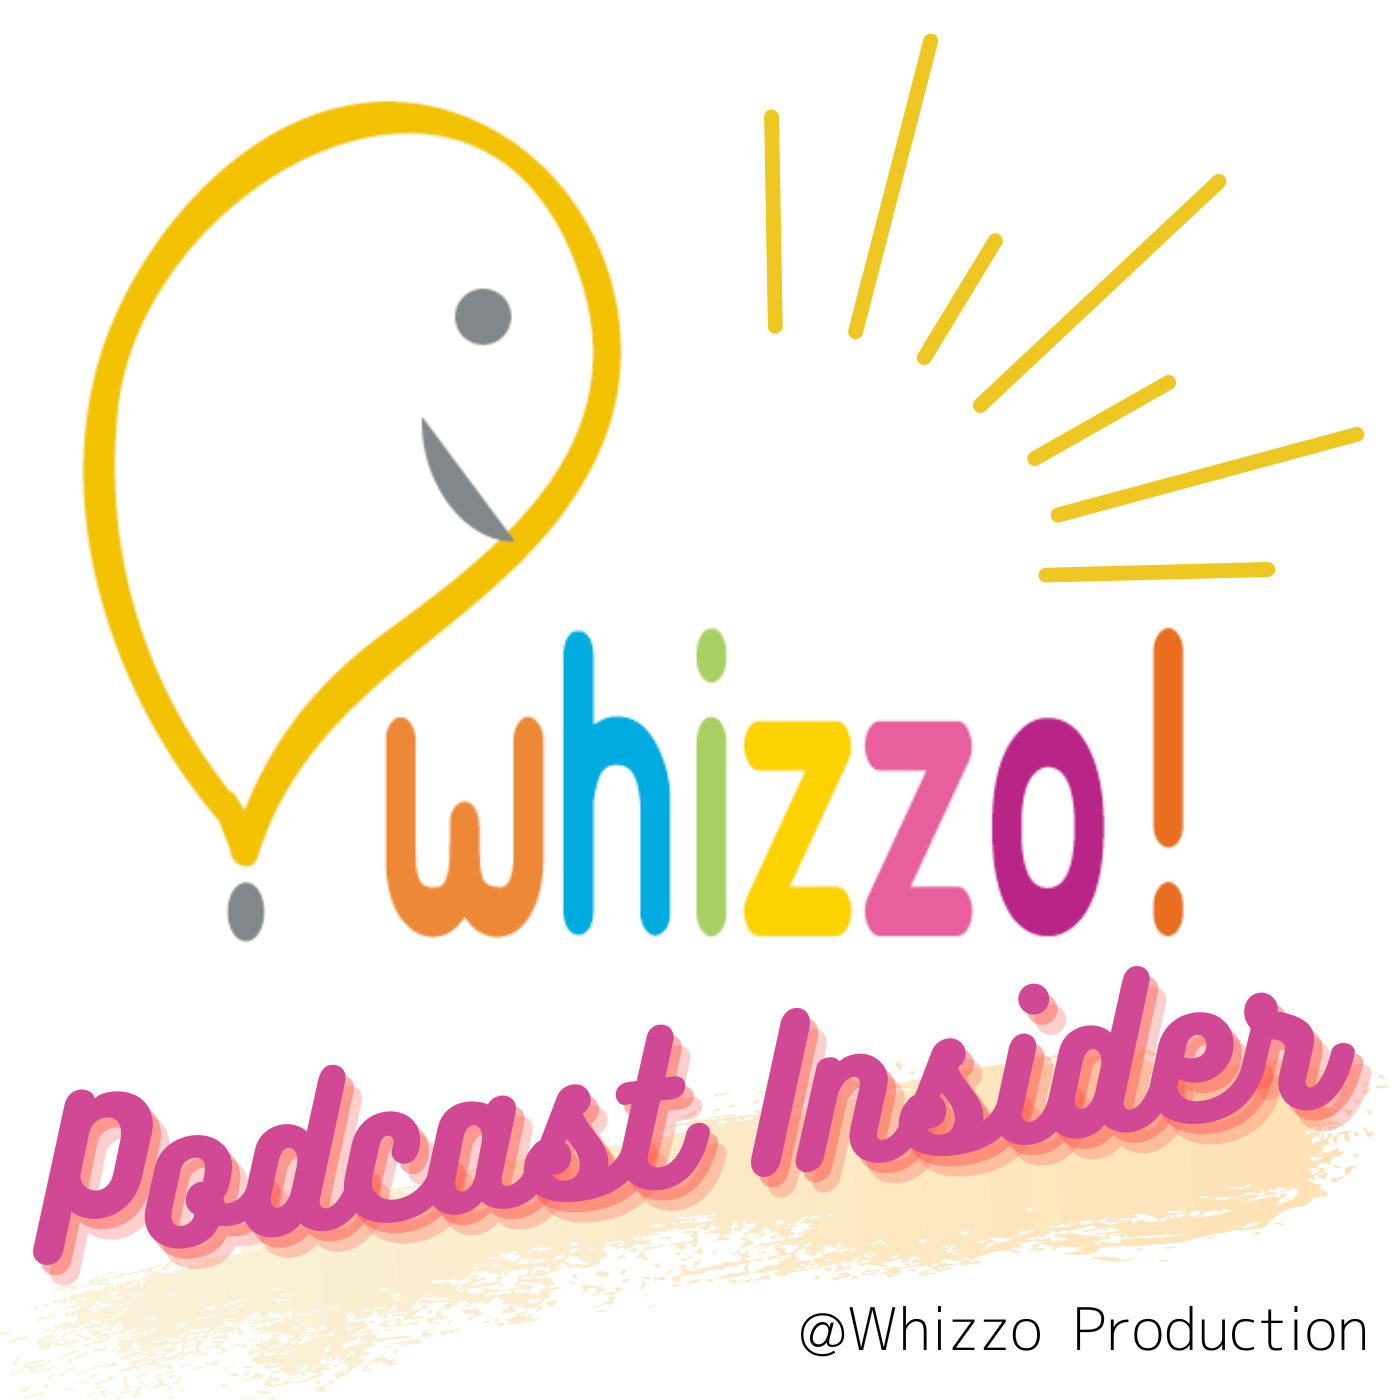 ポッドキャスト・インサイダー // Whizzo Production